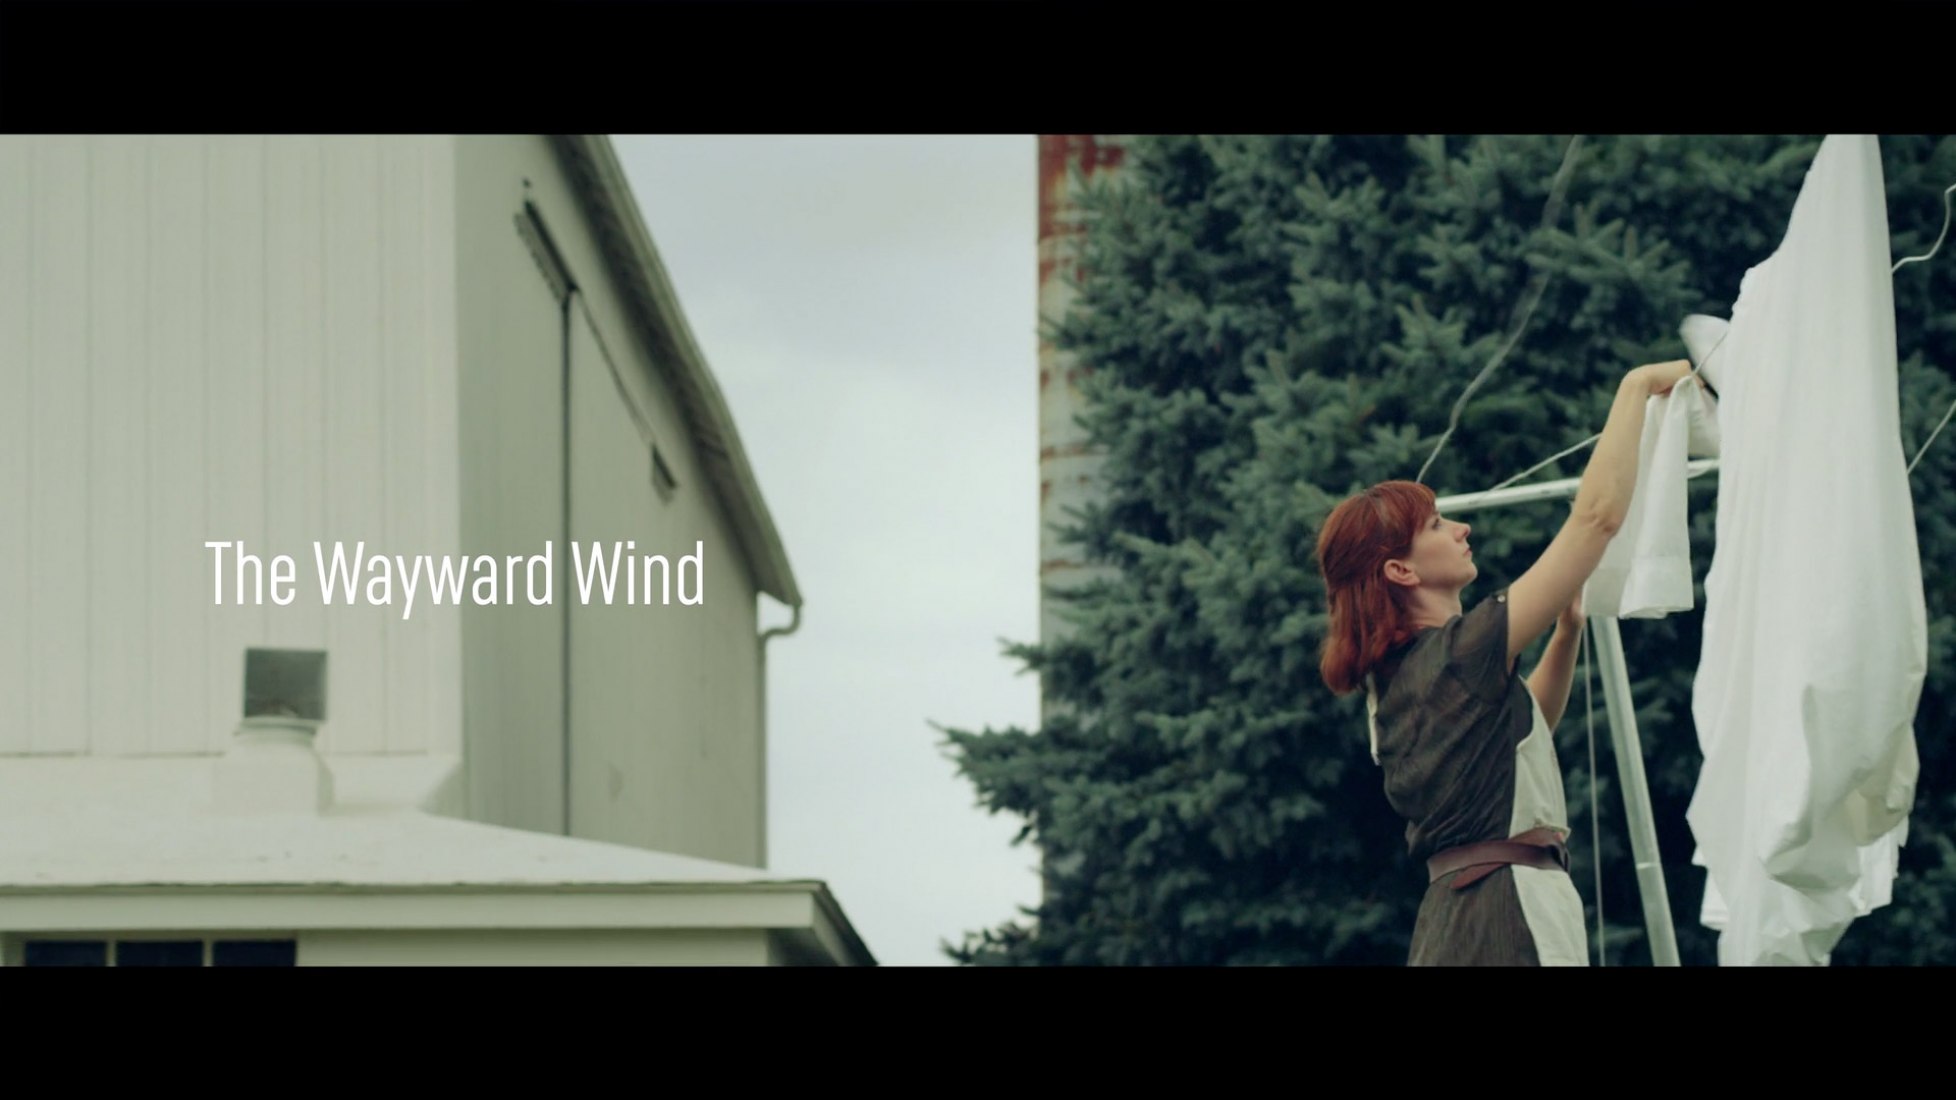 The Wayward Wind by Carl Sondrol